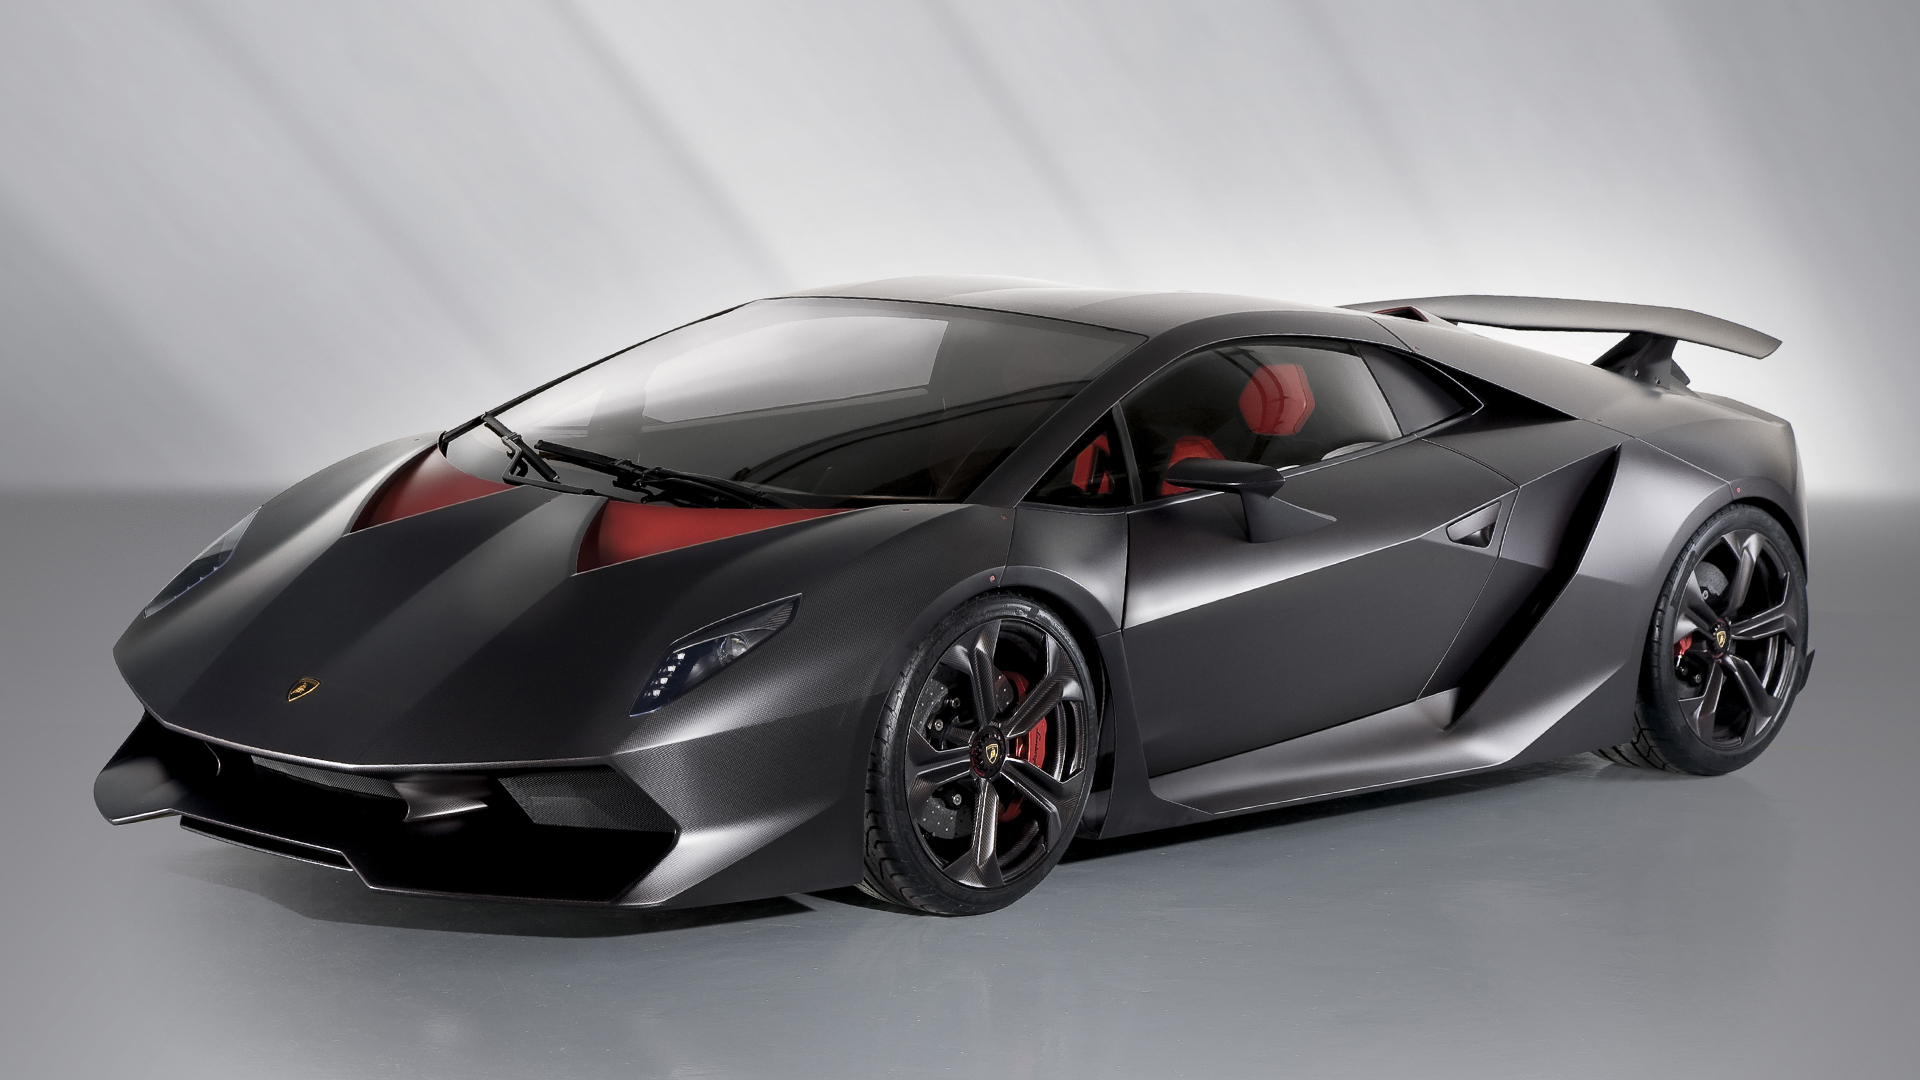 Lamborghini Sesto Elemento - Technical Specifications, Performance